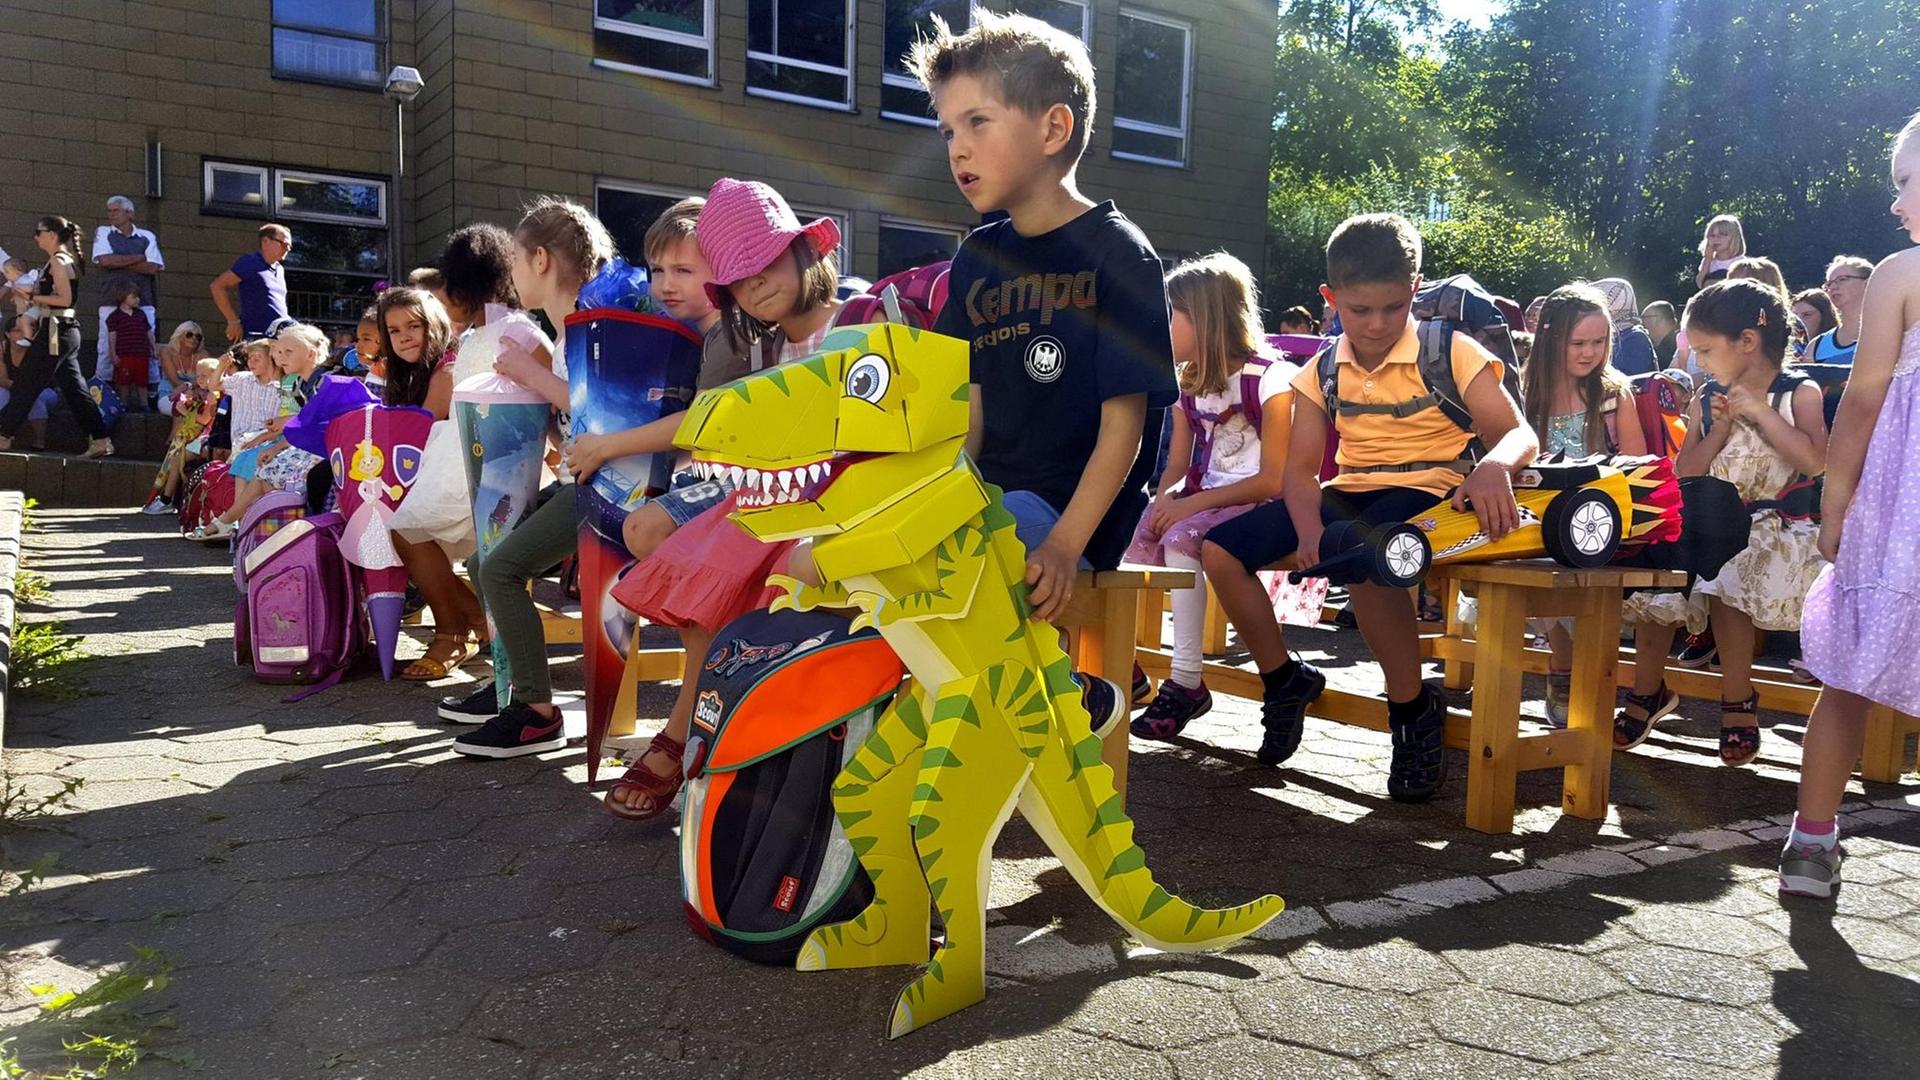 I-Maennchen bei der Einschulung mit Ihren Schultueten auf dem Schulhof, im Vordergrund ein Kind mit Dinosaurier-Schultuete, Deutschland.